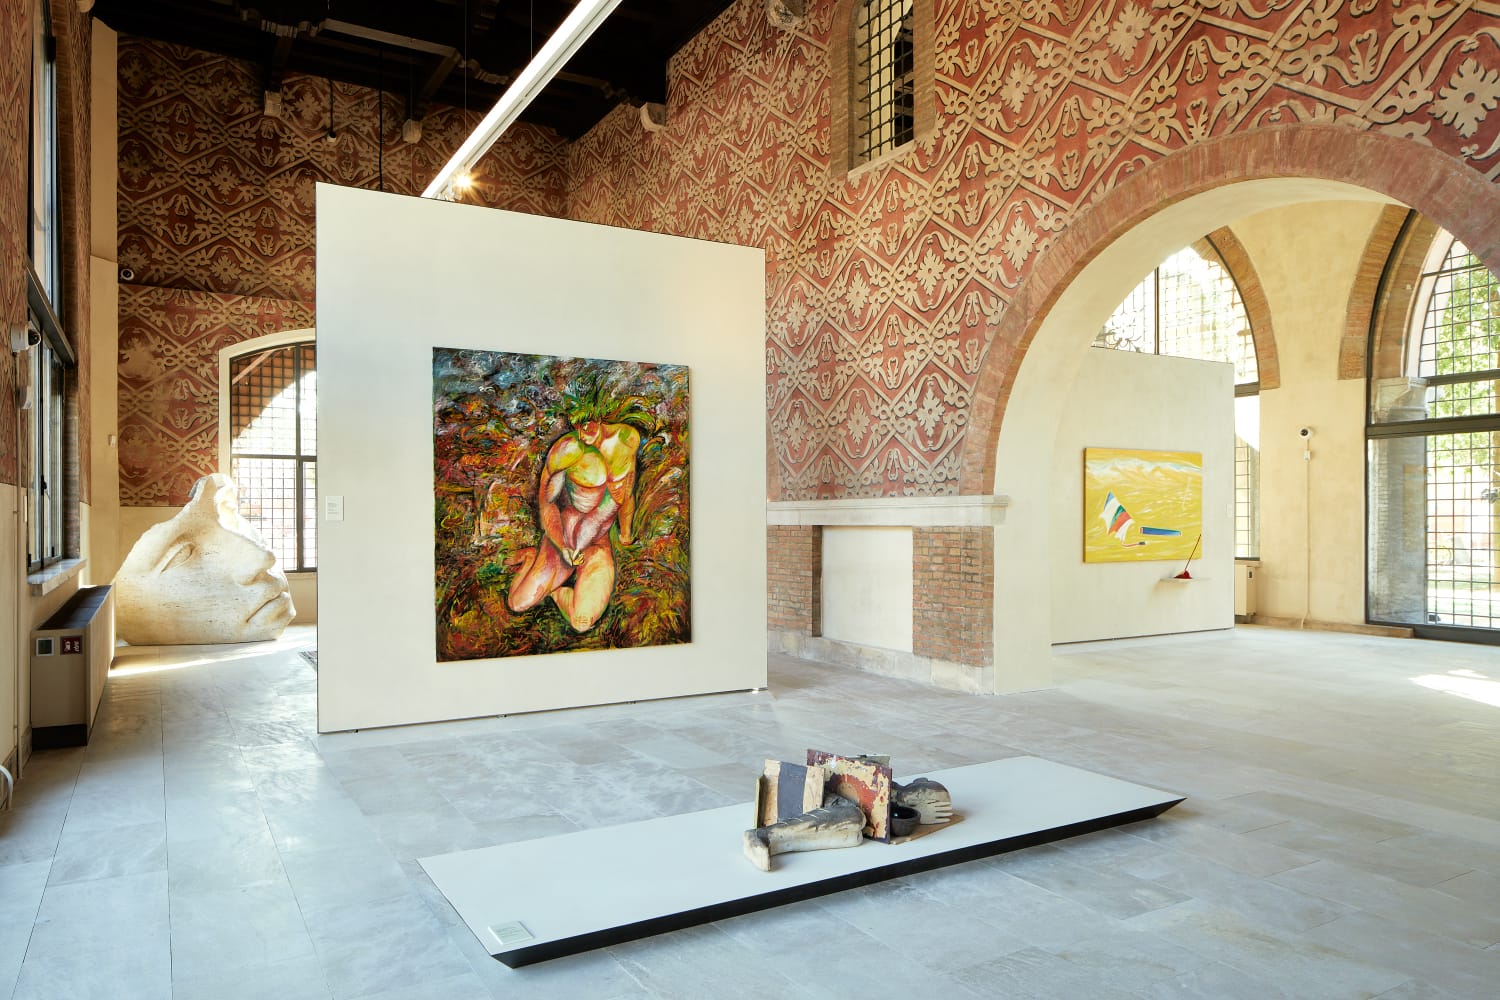 L’arte contemporanea invade i palazzi medievali di Rimini. Ecco PART, un grande nuovo sito museale